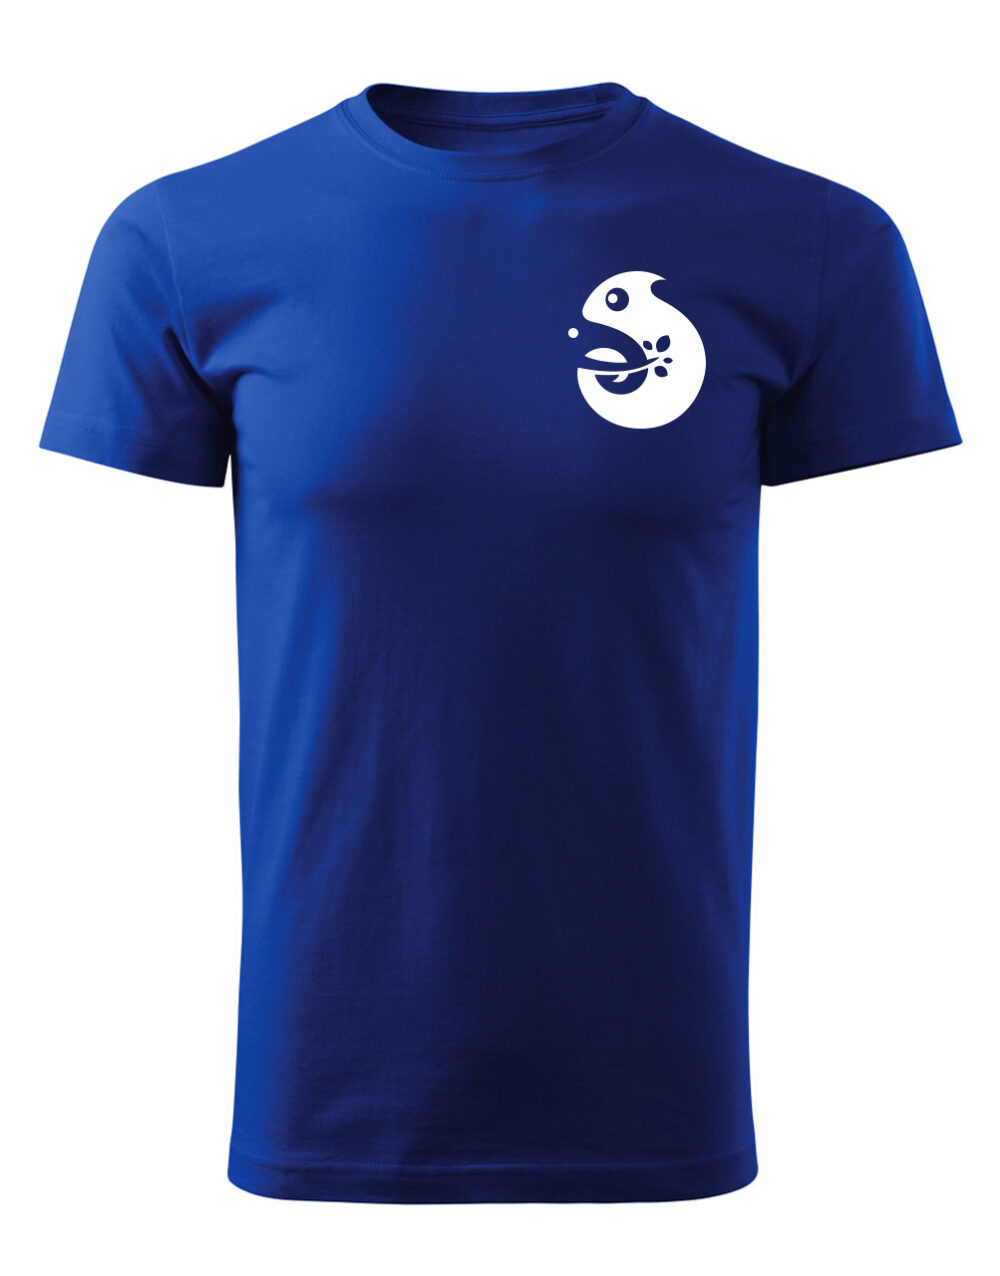 Pánské tričko s potiskem Chameleon královská modrá